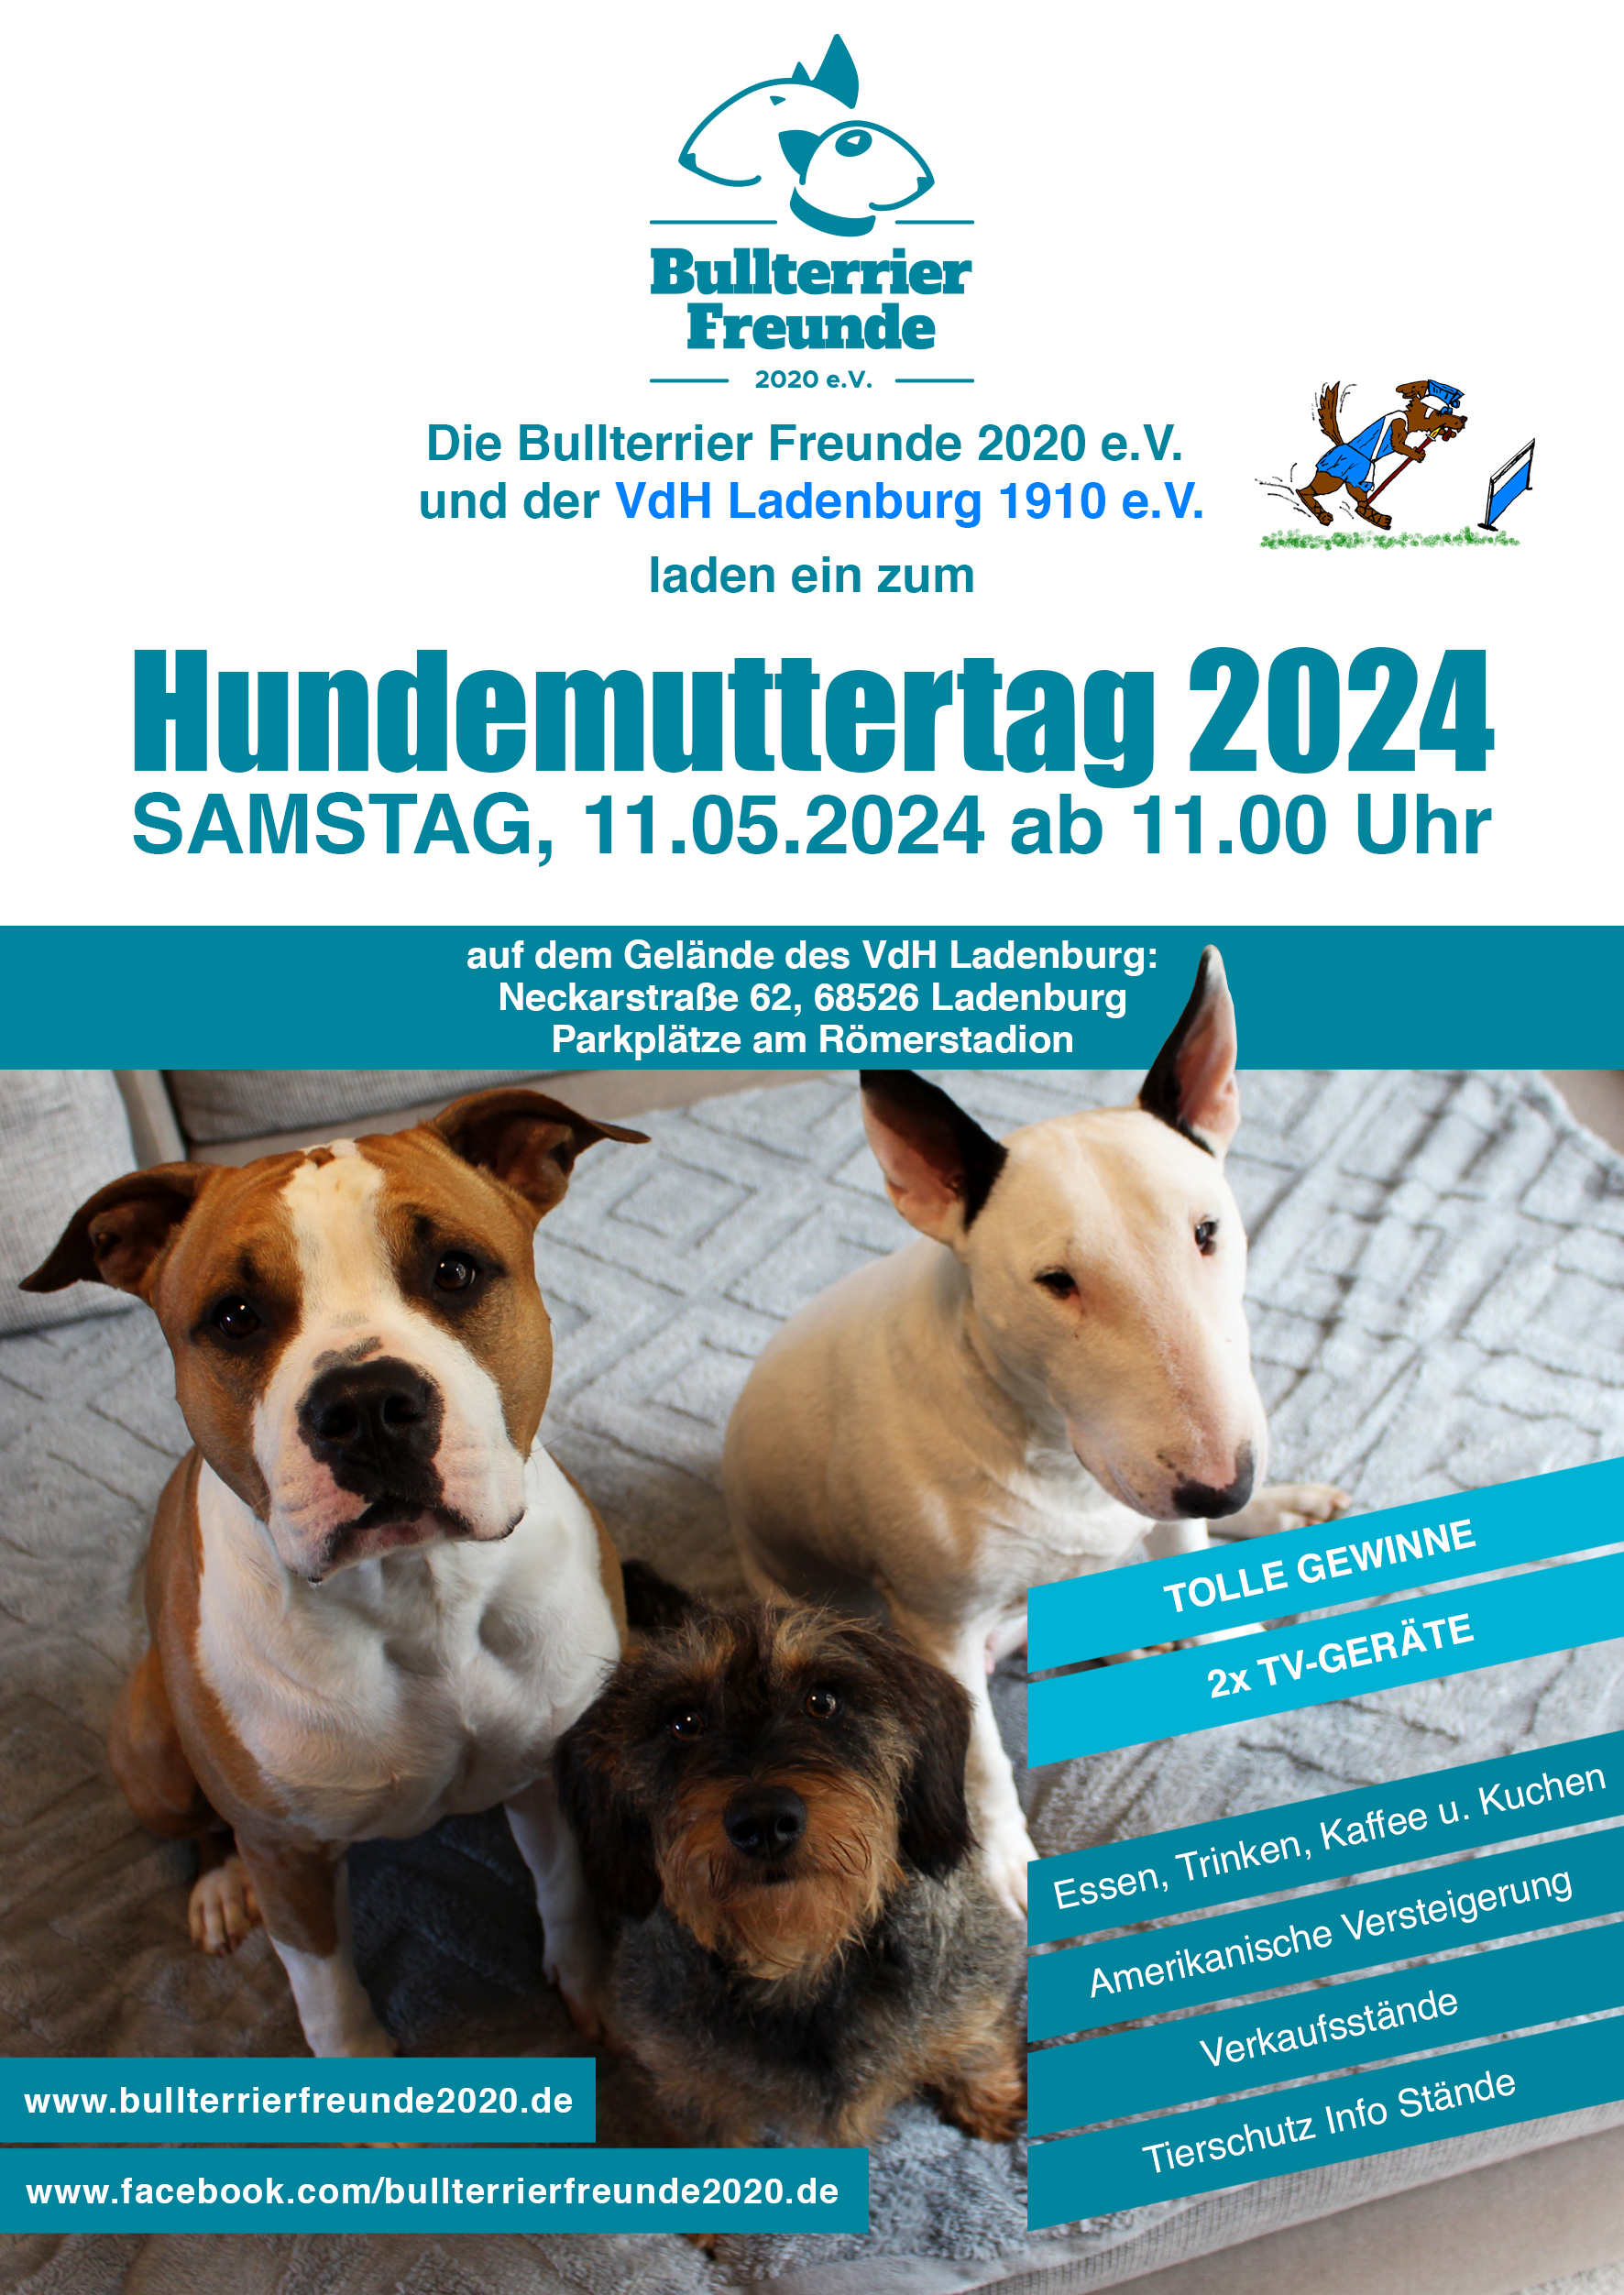 (c) Bullterrierfreunde2020.de